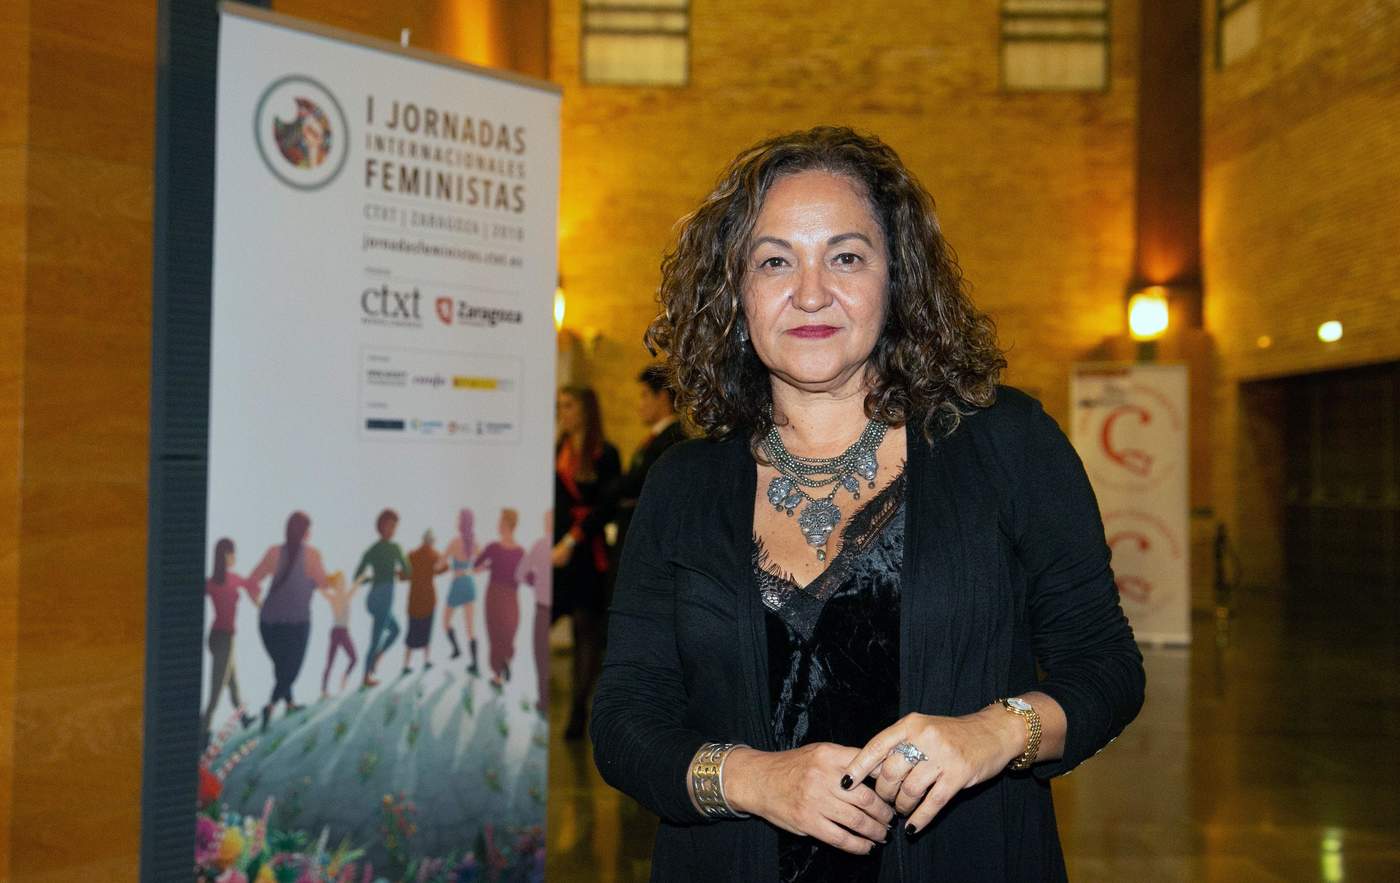 En su carrera, Martínez, quien es autora de una decena de libros, ha sido acreedora de reconocimientos como el Premio Nacional de Periodismo en México y el Premio Ortega y Gasset y el Primer Premio Lorenzo Natali en Europa. (ARCHIVO)